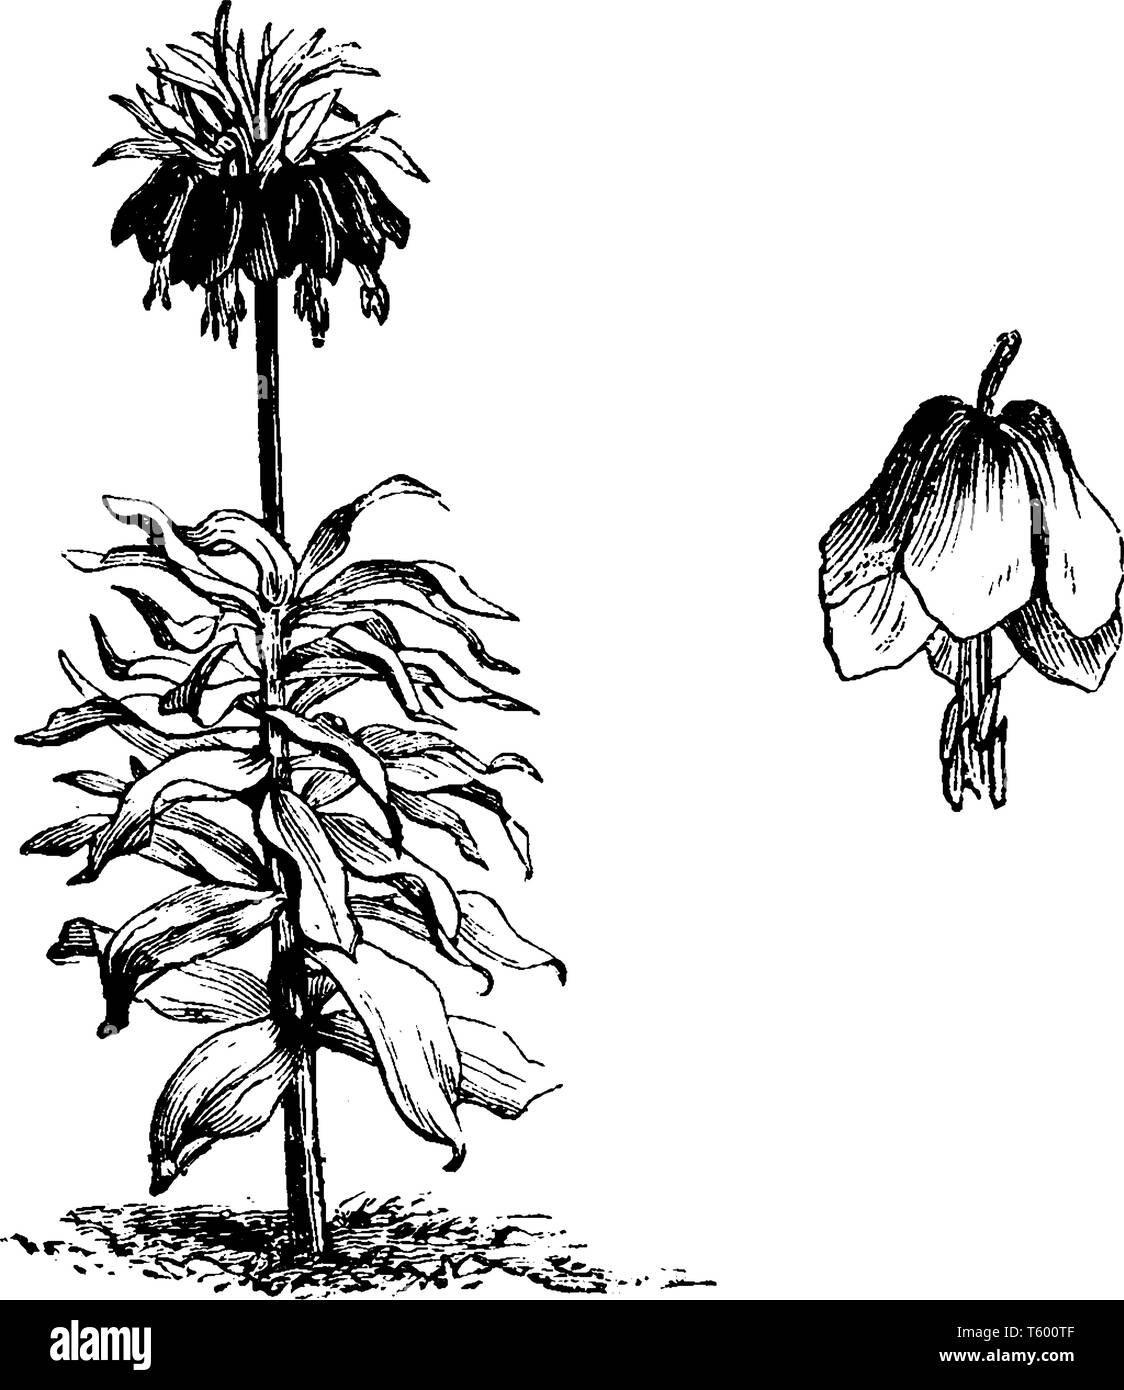 Bild der Fritillaria Meleagris Pflanze, prominente Wirtel der 3-5 nach unten schauenden Blüten an der Spitze der Stengel, von einem 'Krone' der kleine Blätter, vint gekrönt Stock Vektor